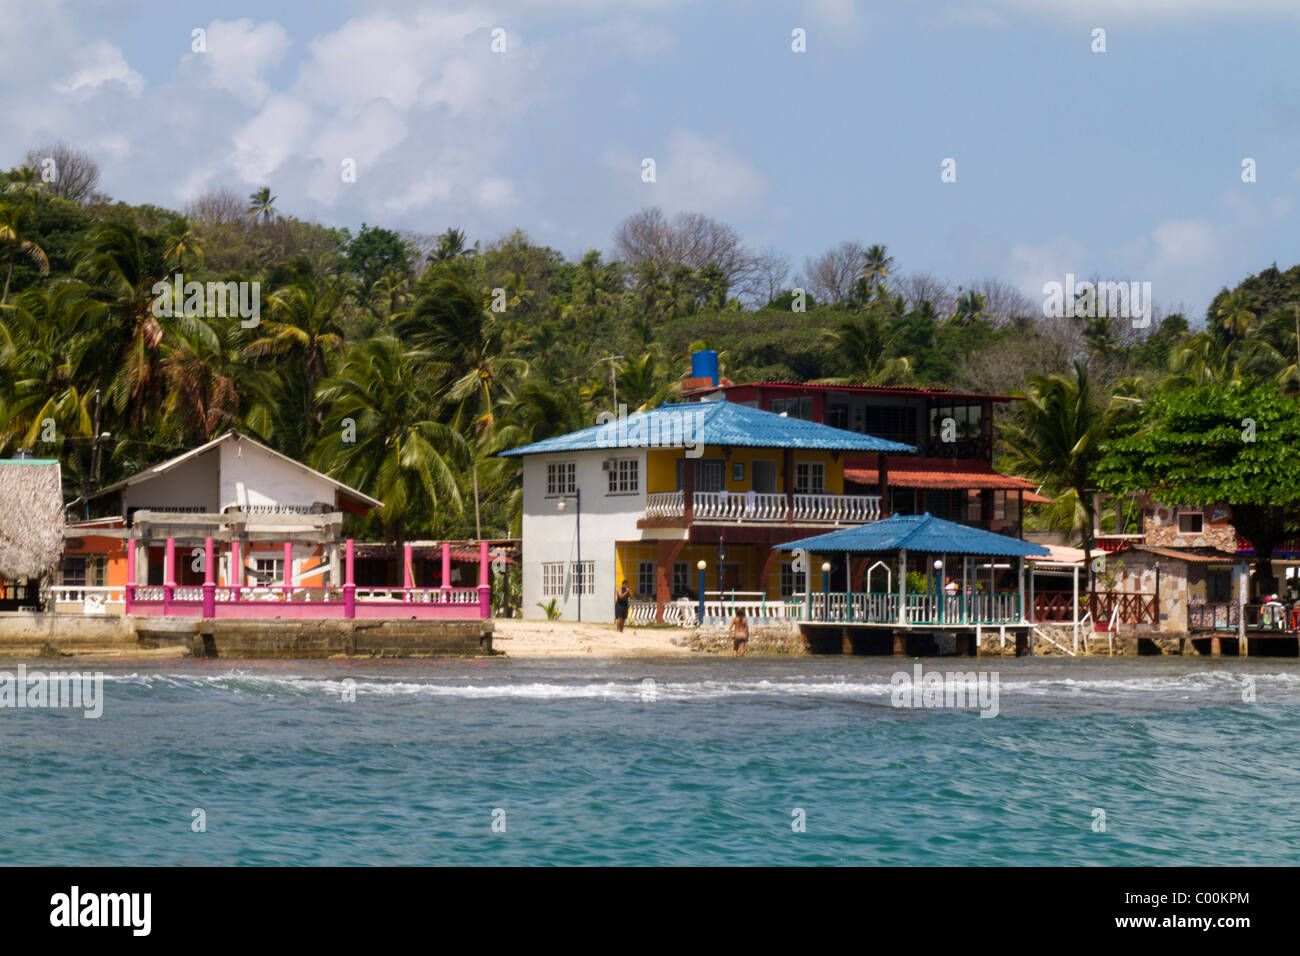 Isla Grande shore. Colon, Republic of Panama, Central America Stock Photo